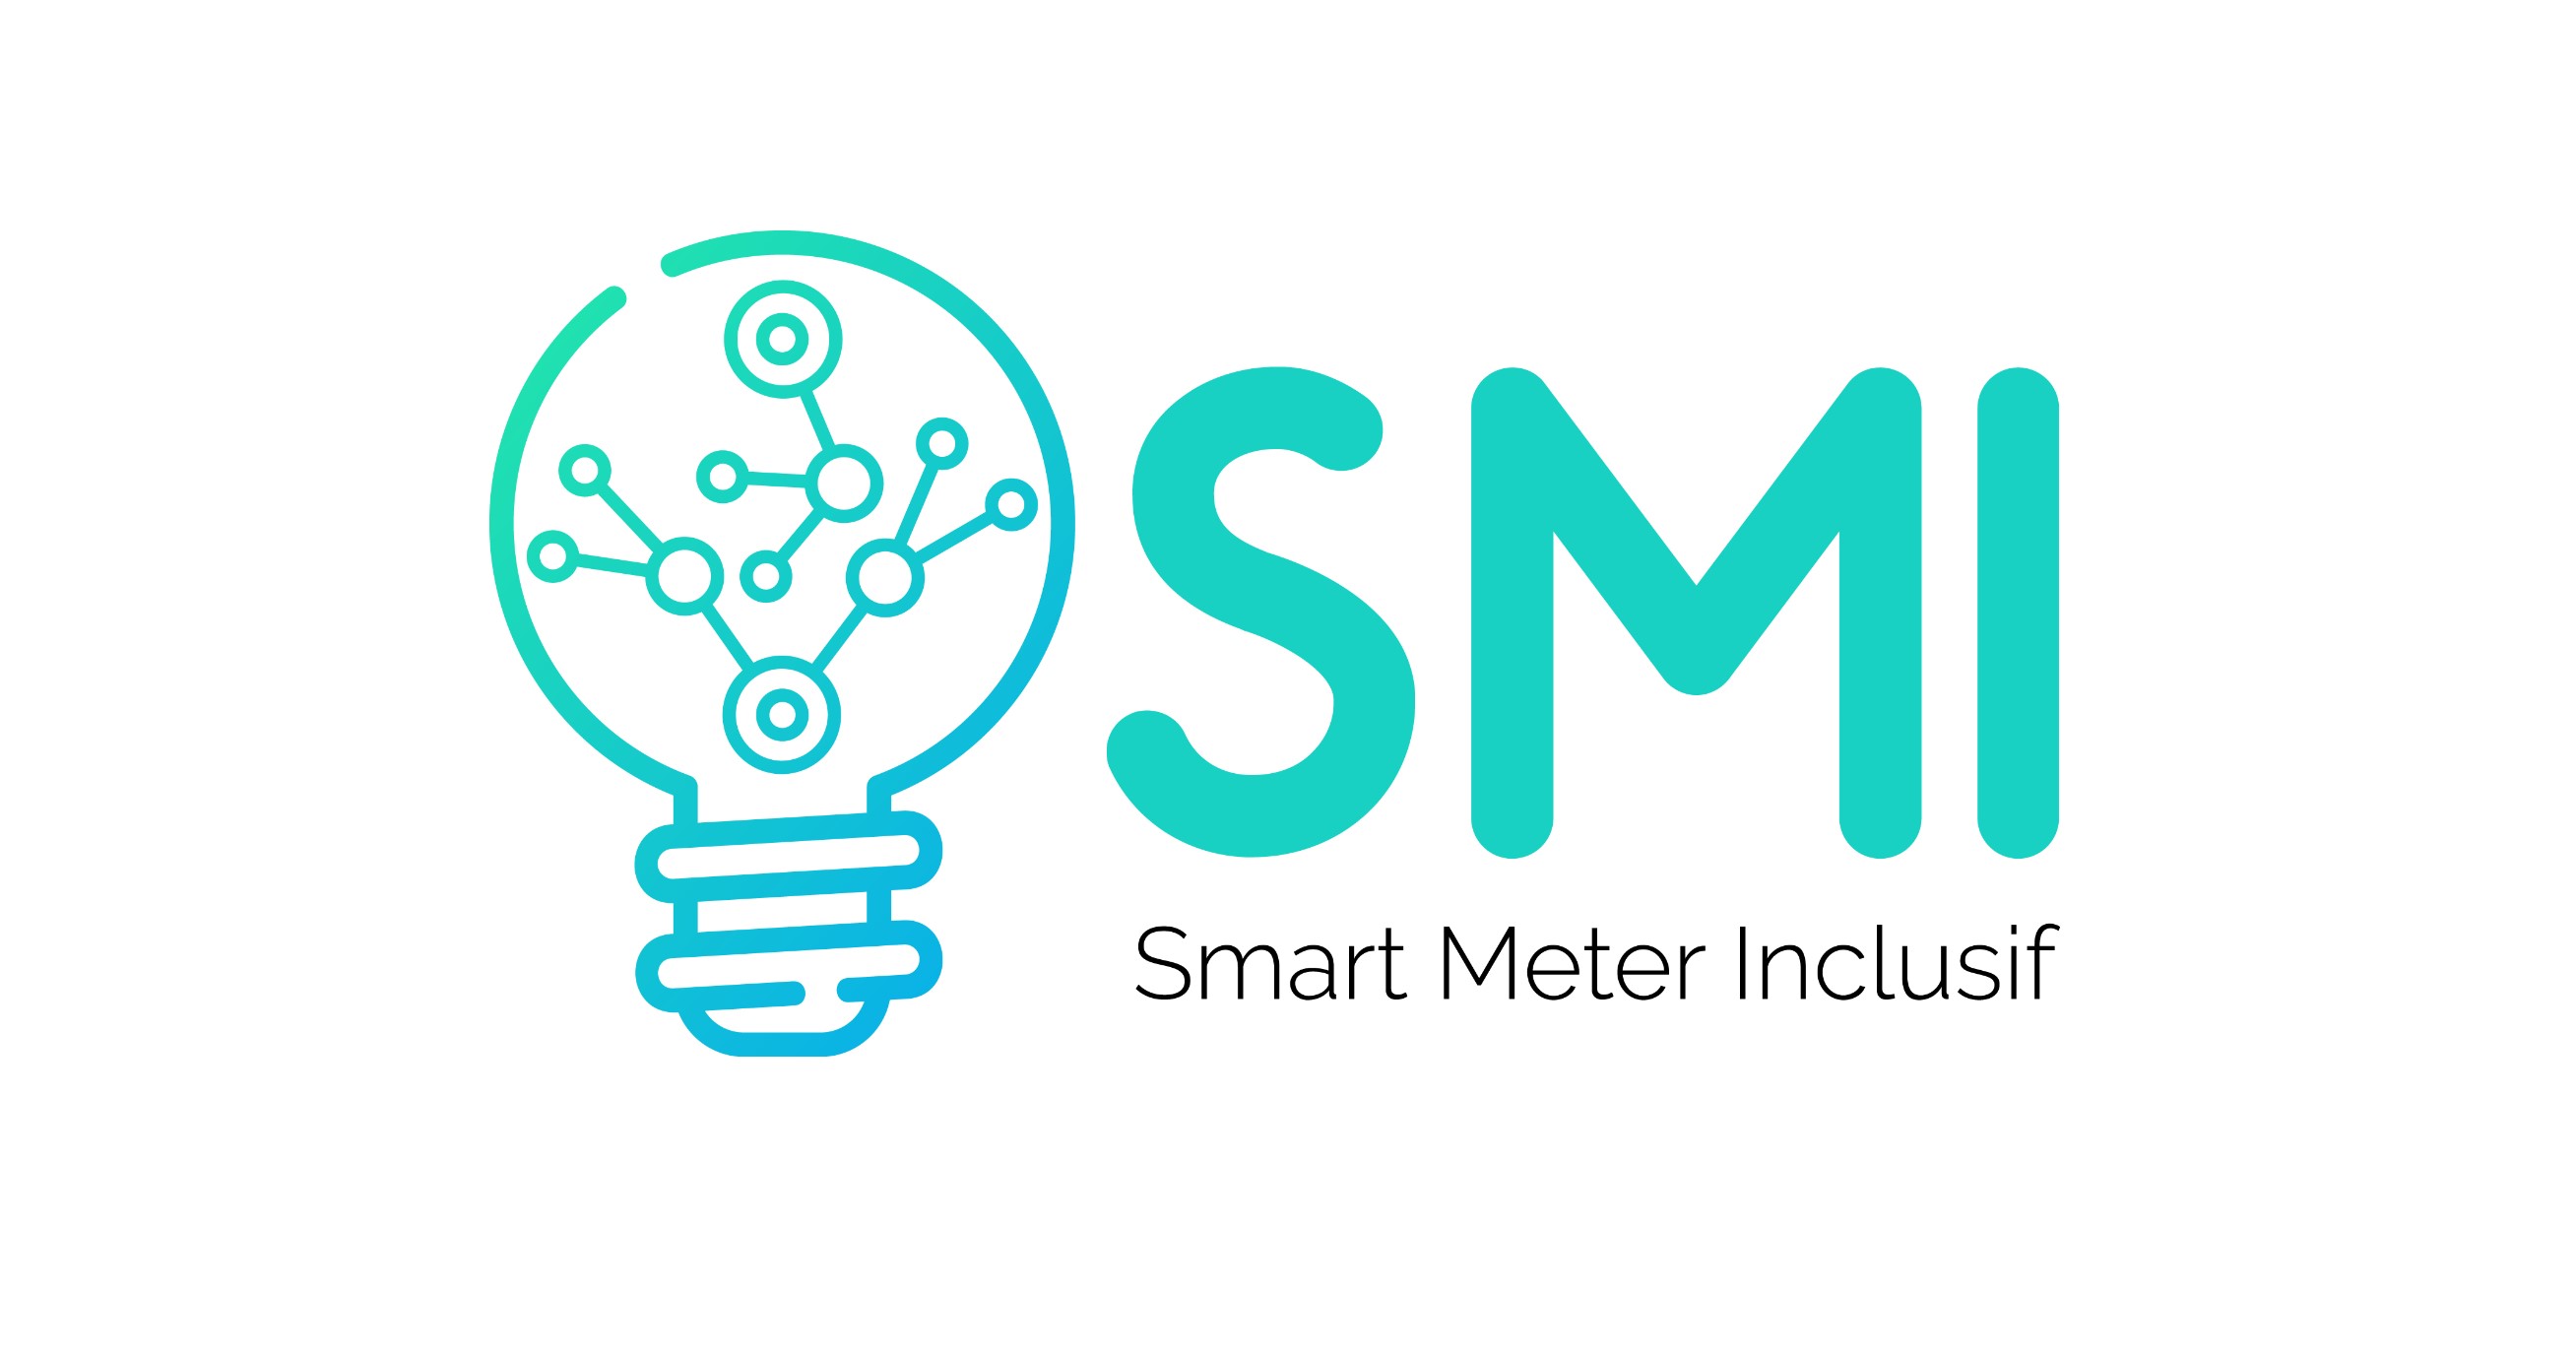 Smart Meter Inclusif (SMI): künstliche Intelligenz zur Steuerung des Energieverbrauchs